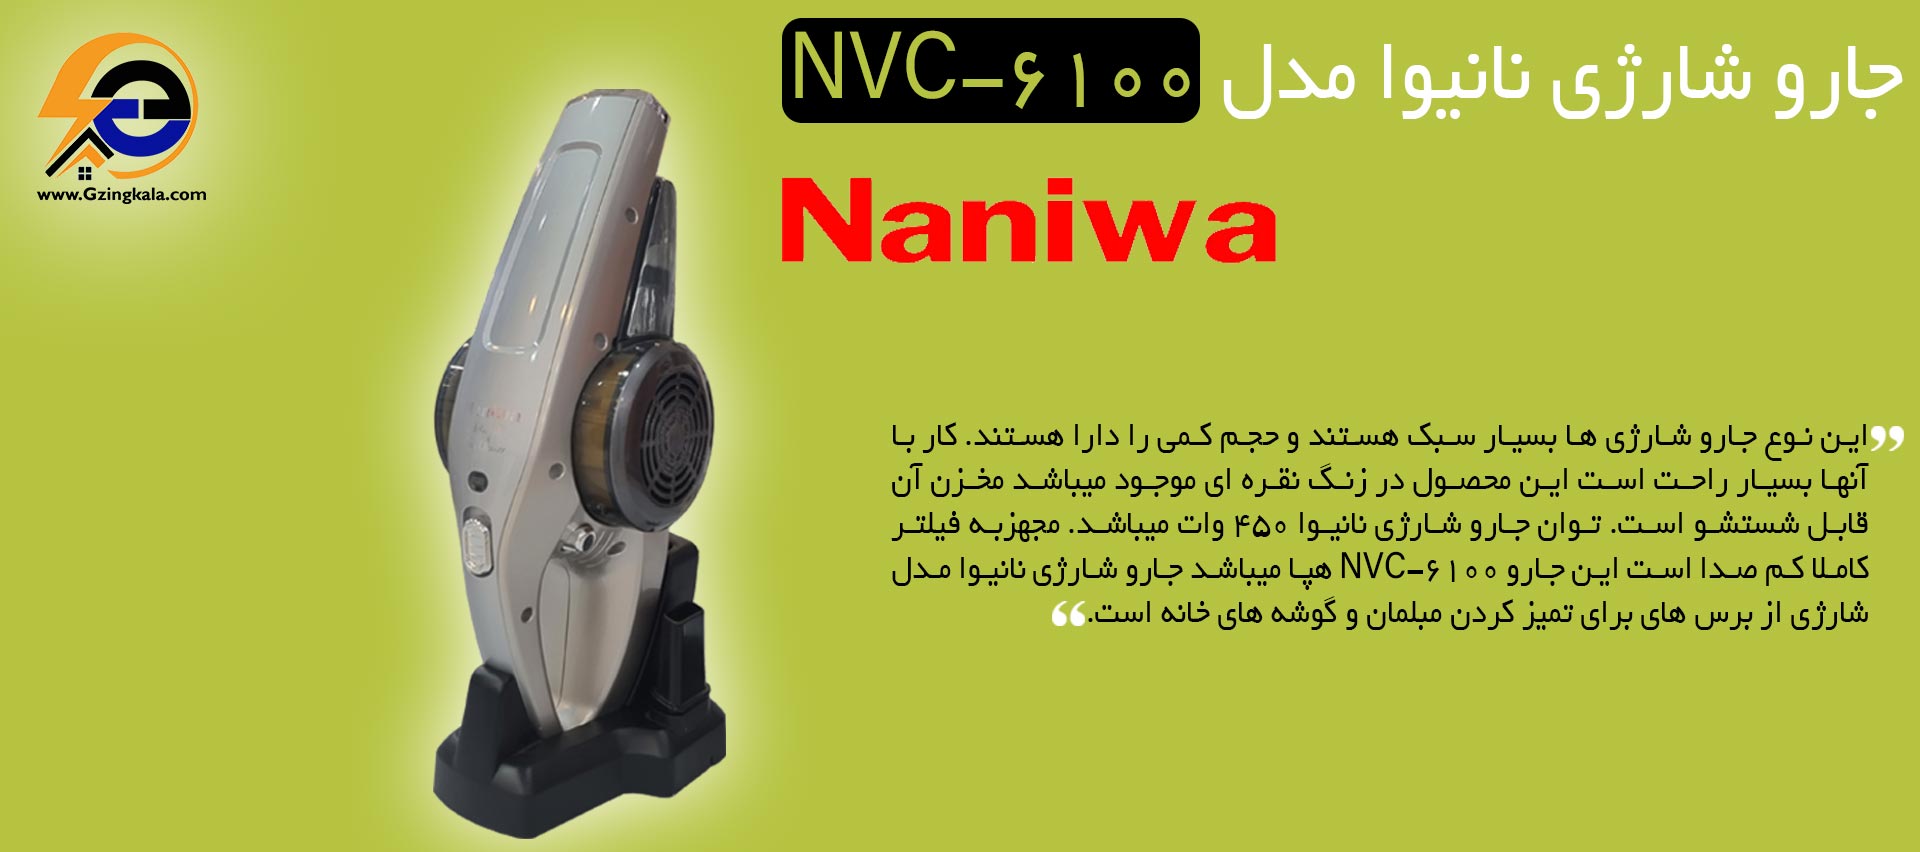 جارو شارژِی نانیوا مدل NVC-6100